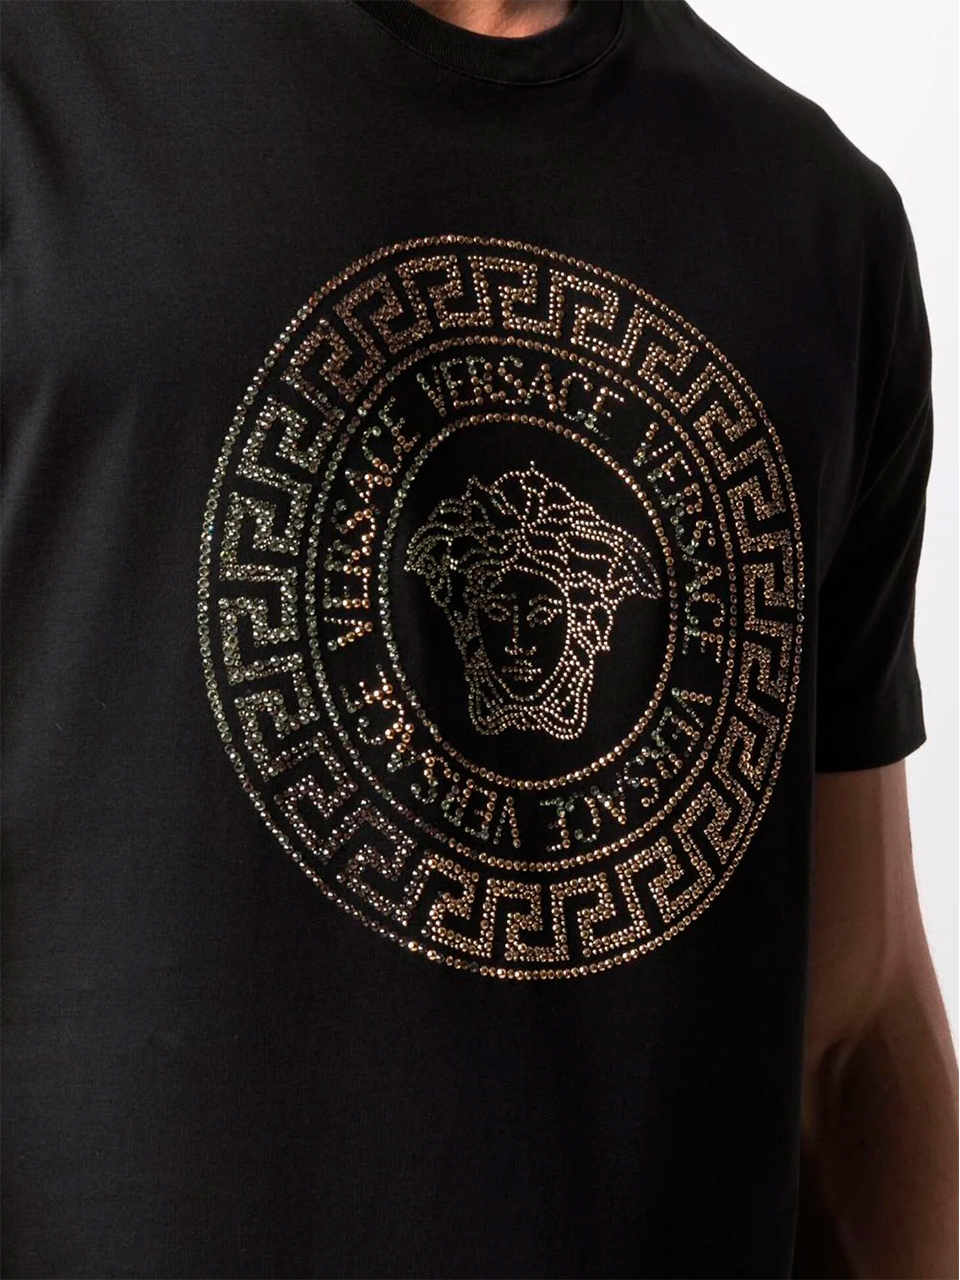 Imagem de: Camiseta Versace Preta com Estampa Medusa Cristais